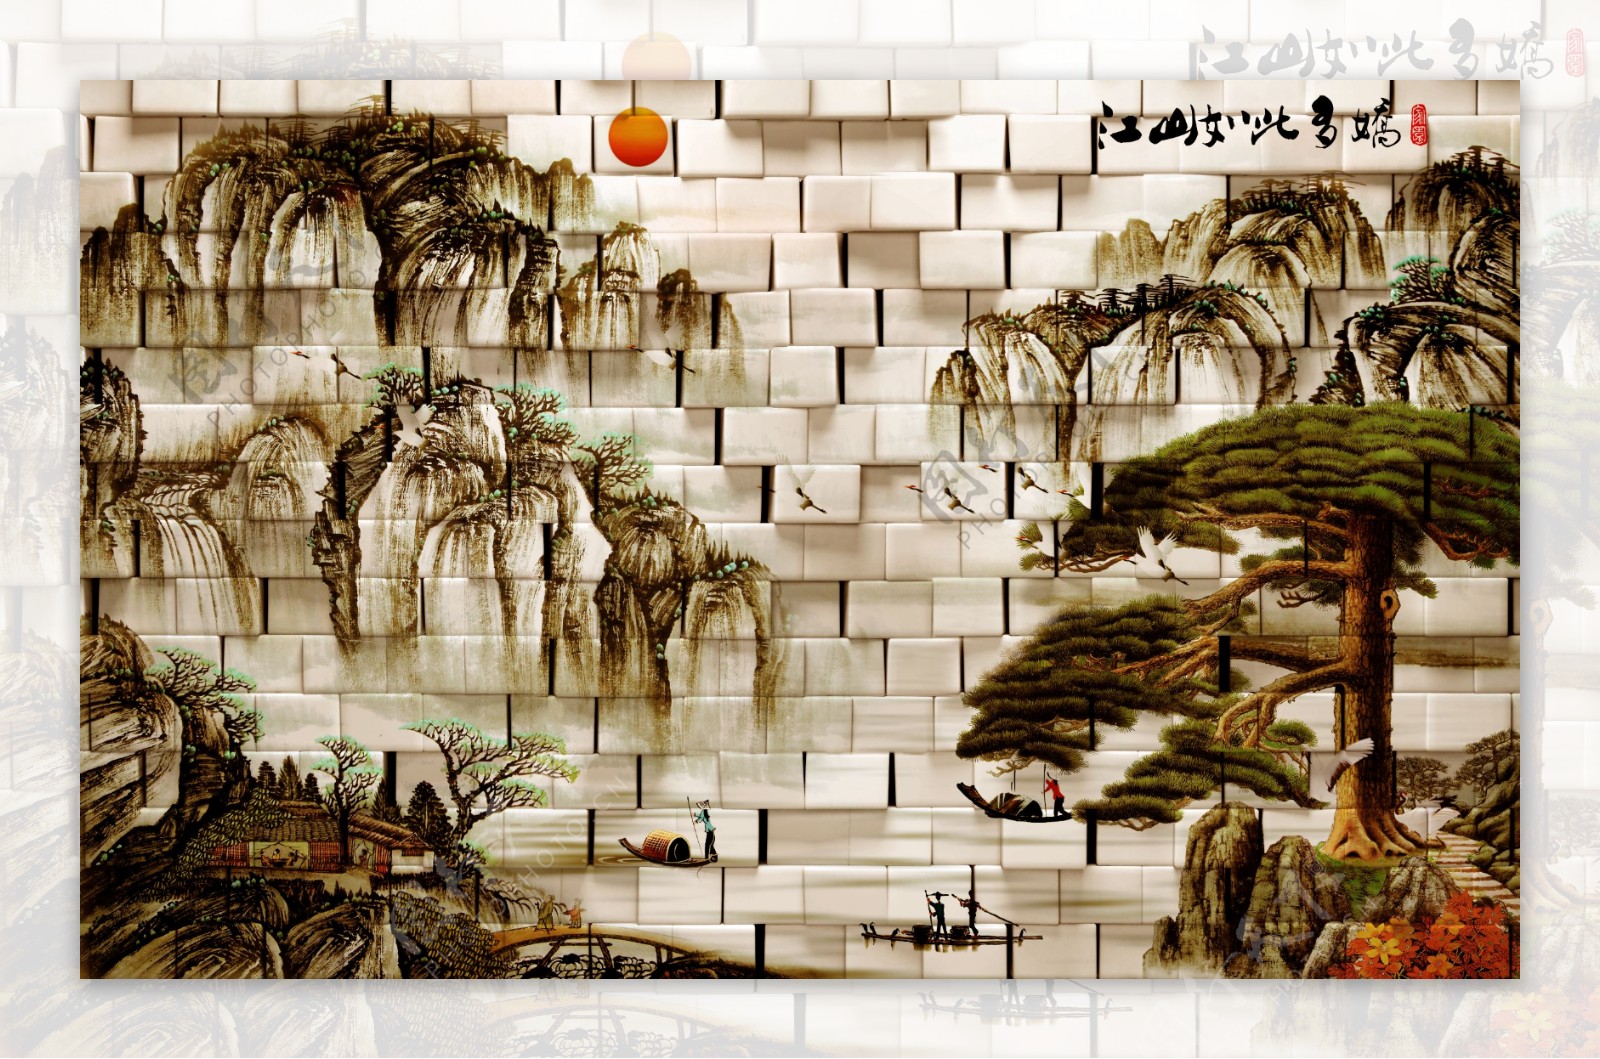 雅室兰香山水室内瓷砖背景墙